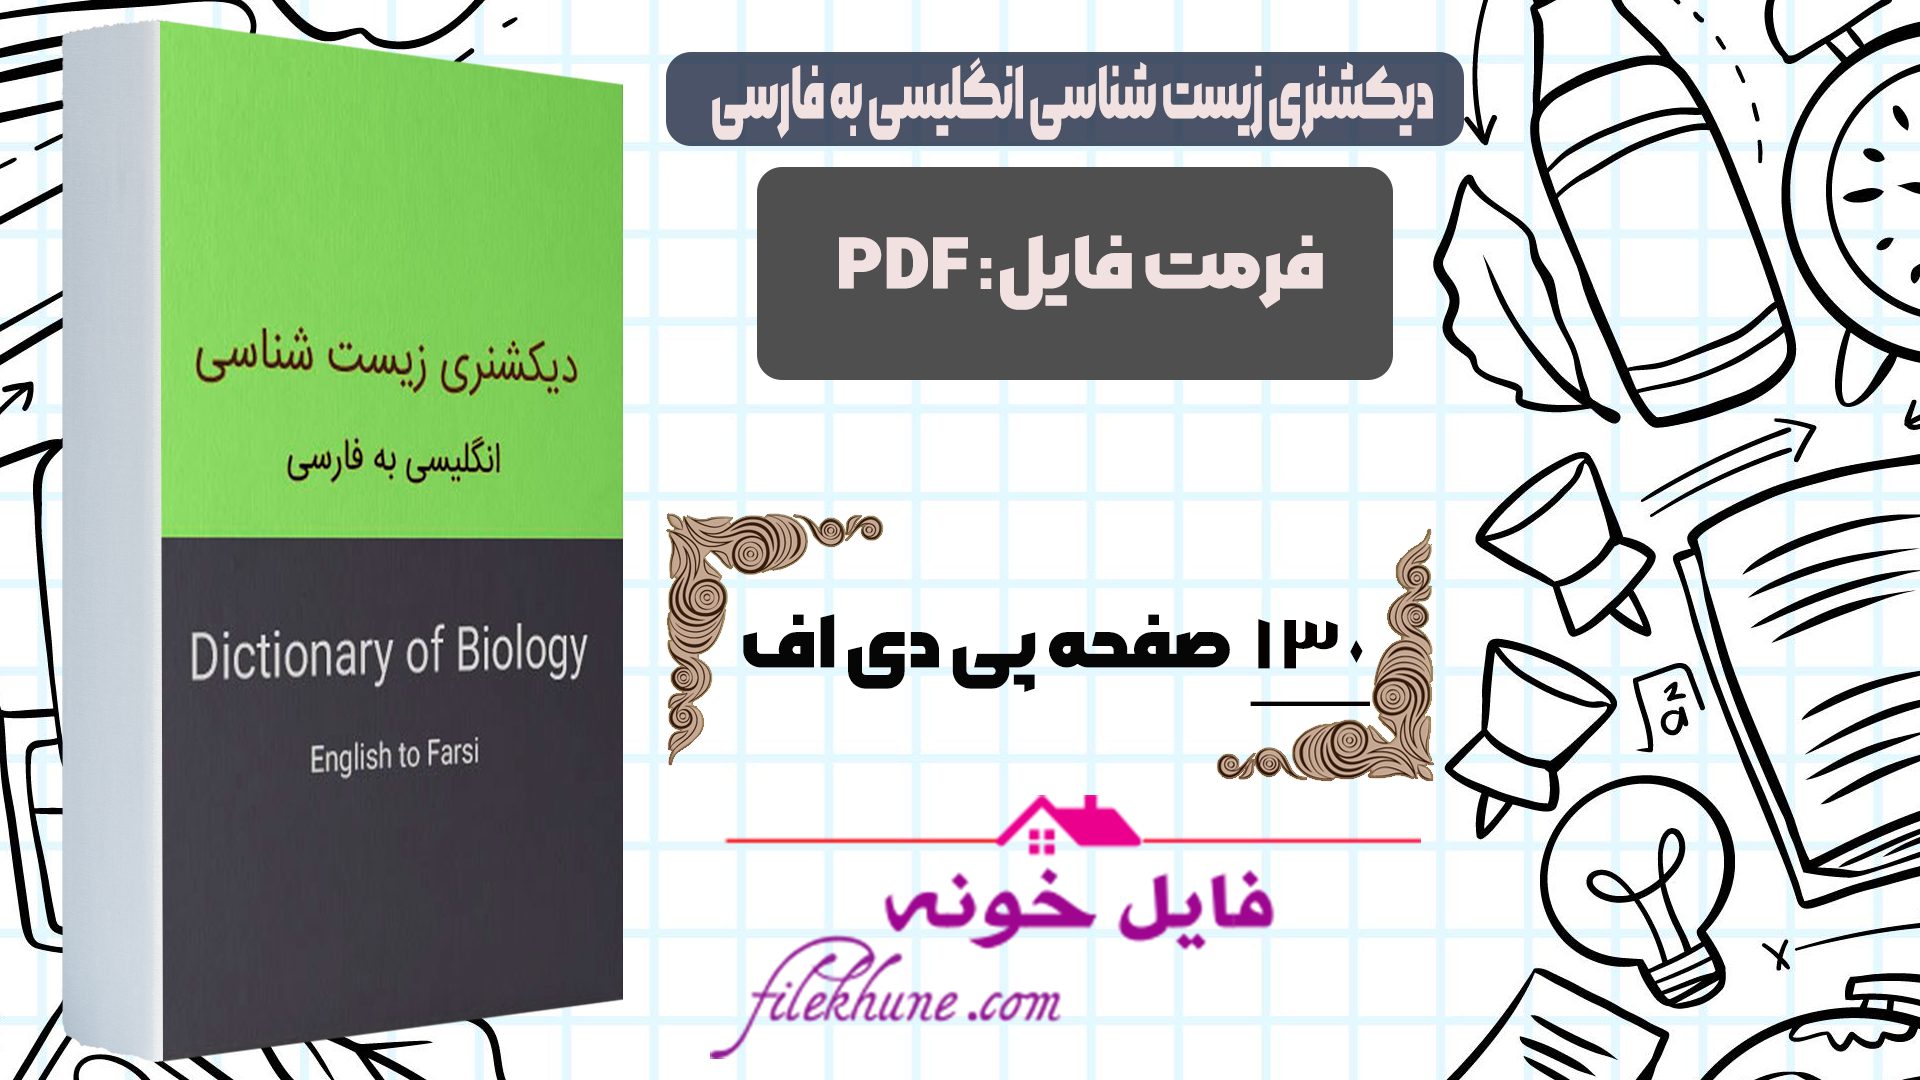 دانلود کتاب دیکشنری زیست شناسی انگلیسی به فارسی PDF